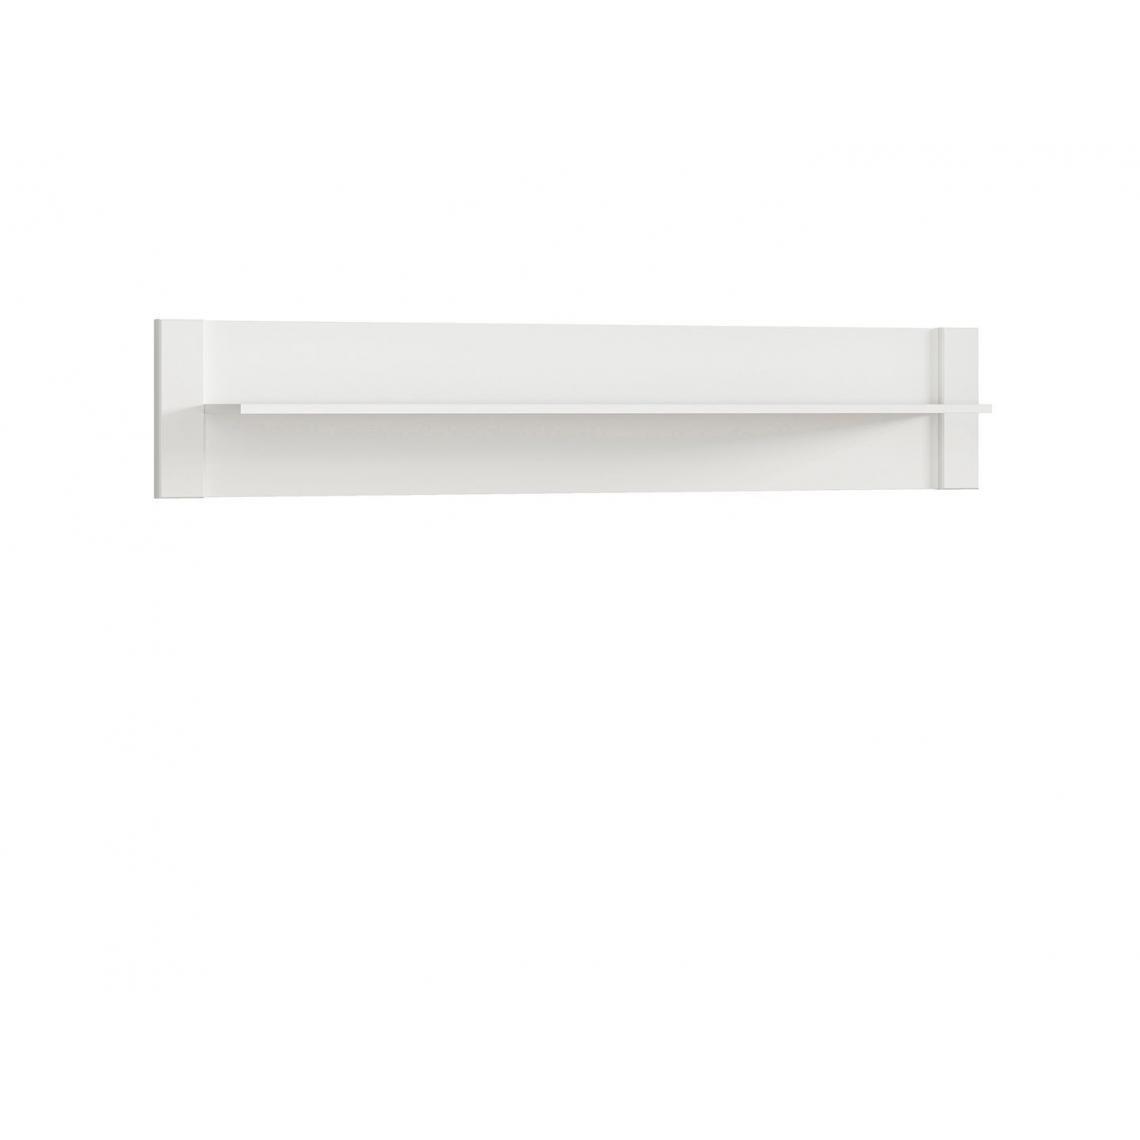 Hucoco - KELTA - Tablette suspendue style scandinave salon/chambre/chambre d'ado - 160x30x20 - Spacieuse - Tablette murale - Blanc - Etagères